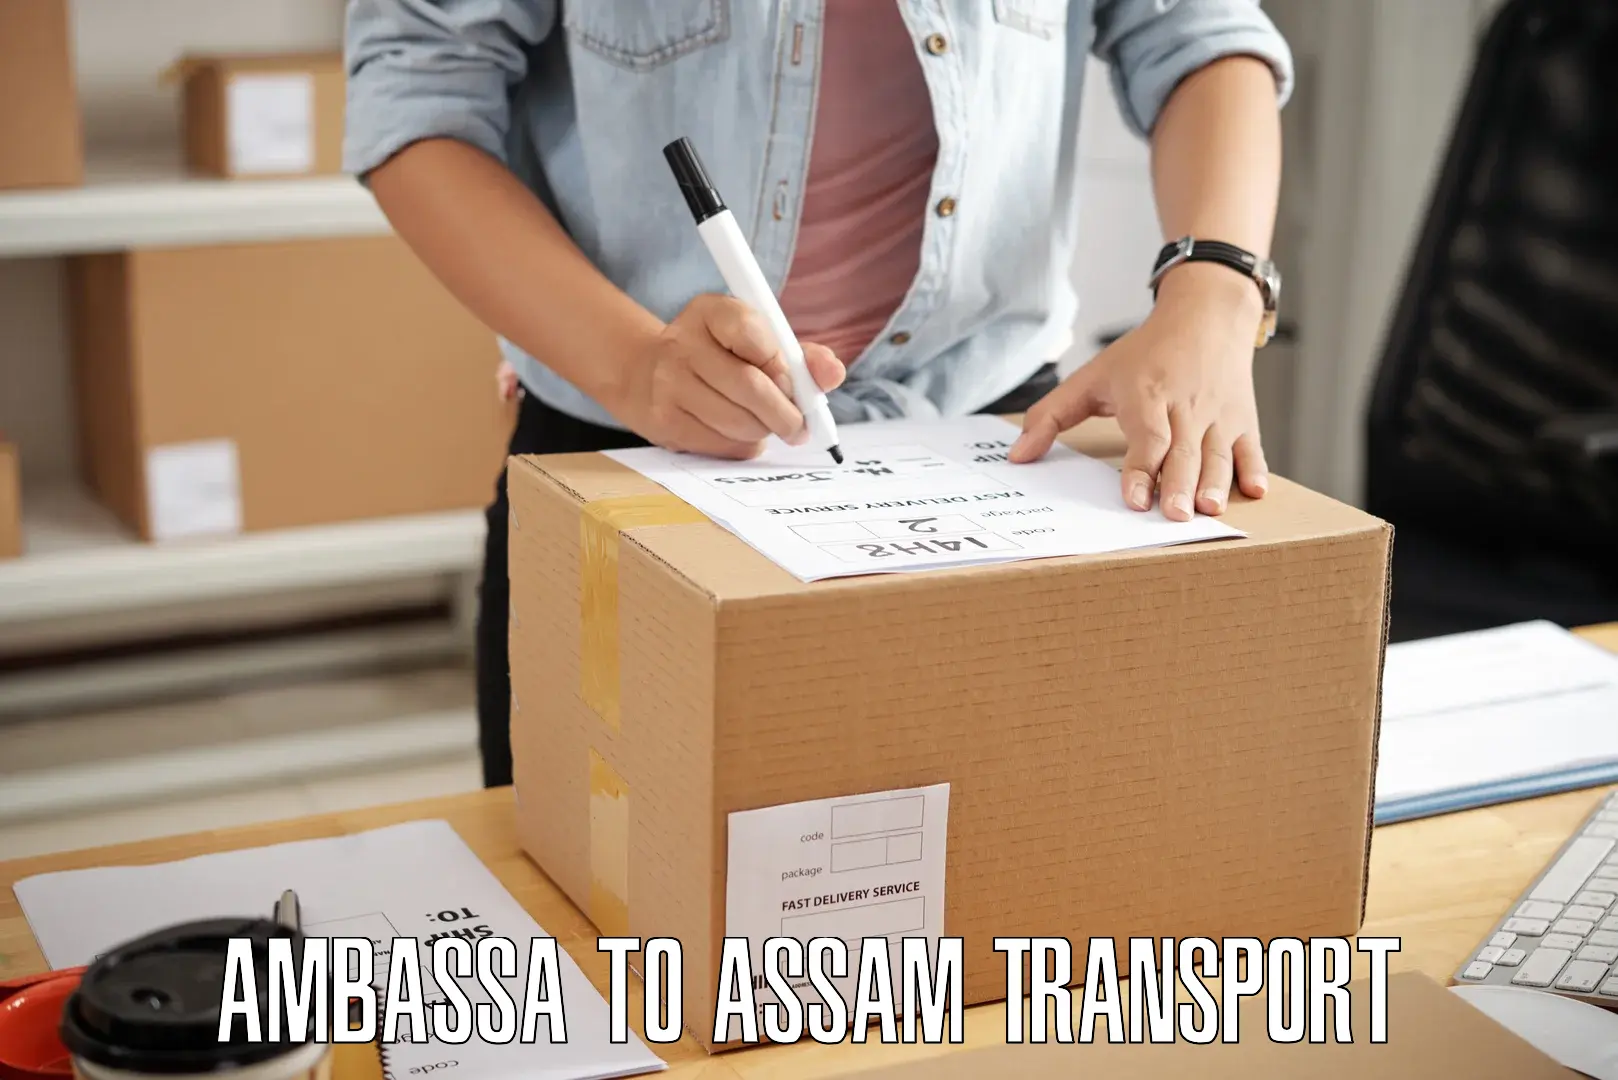 Transport shared services in Ambassa to Jorabat